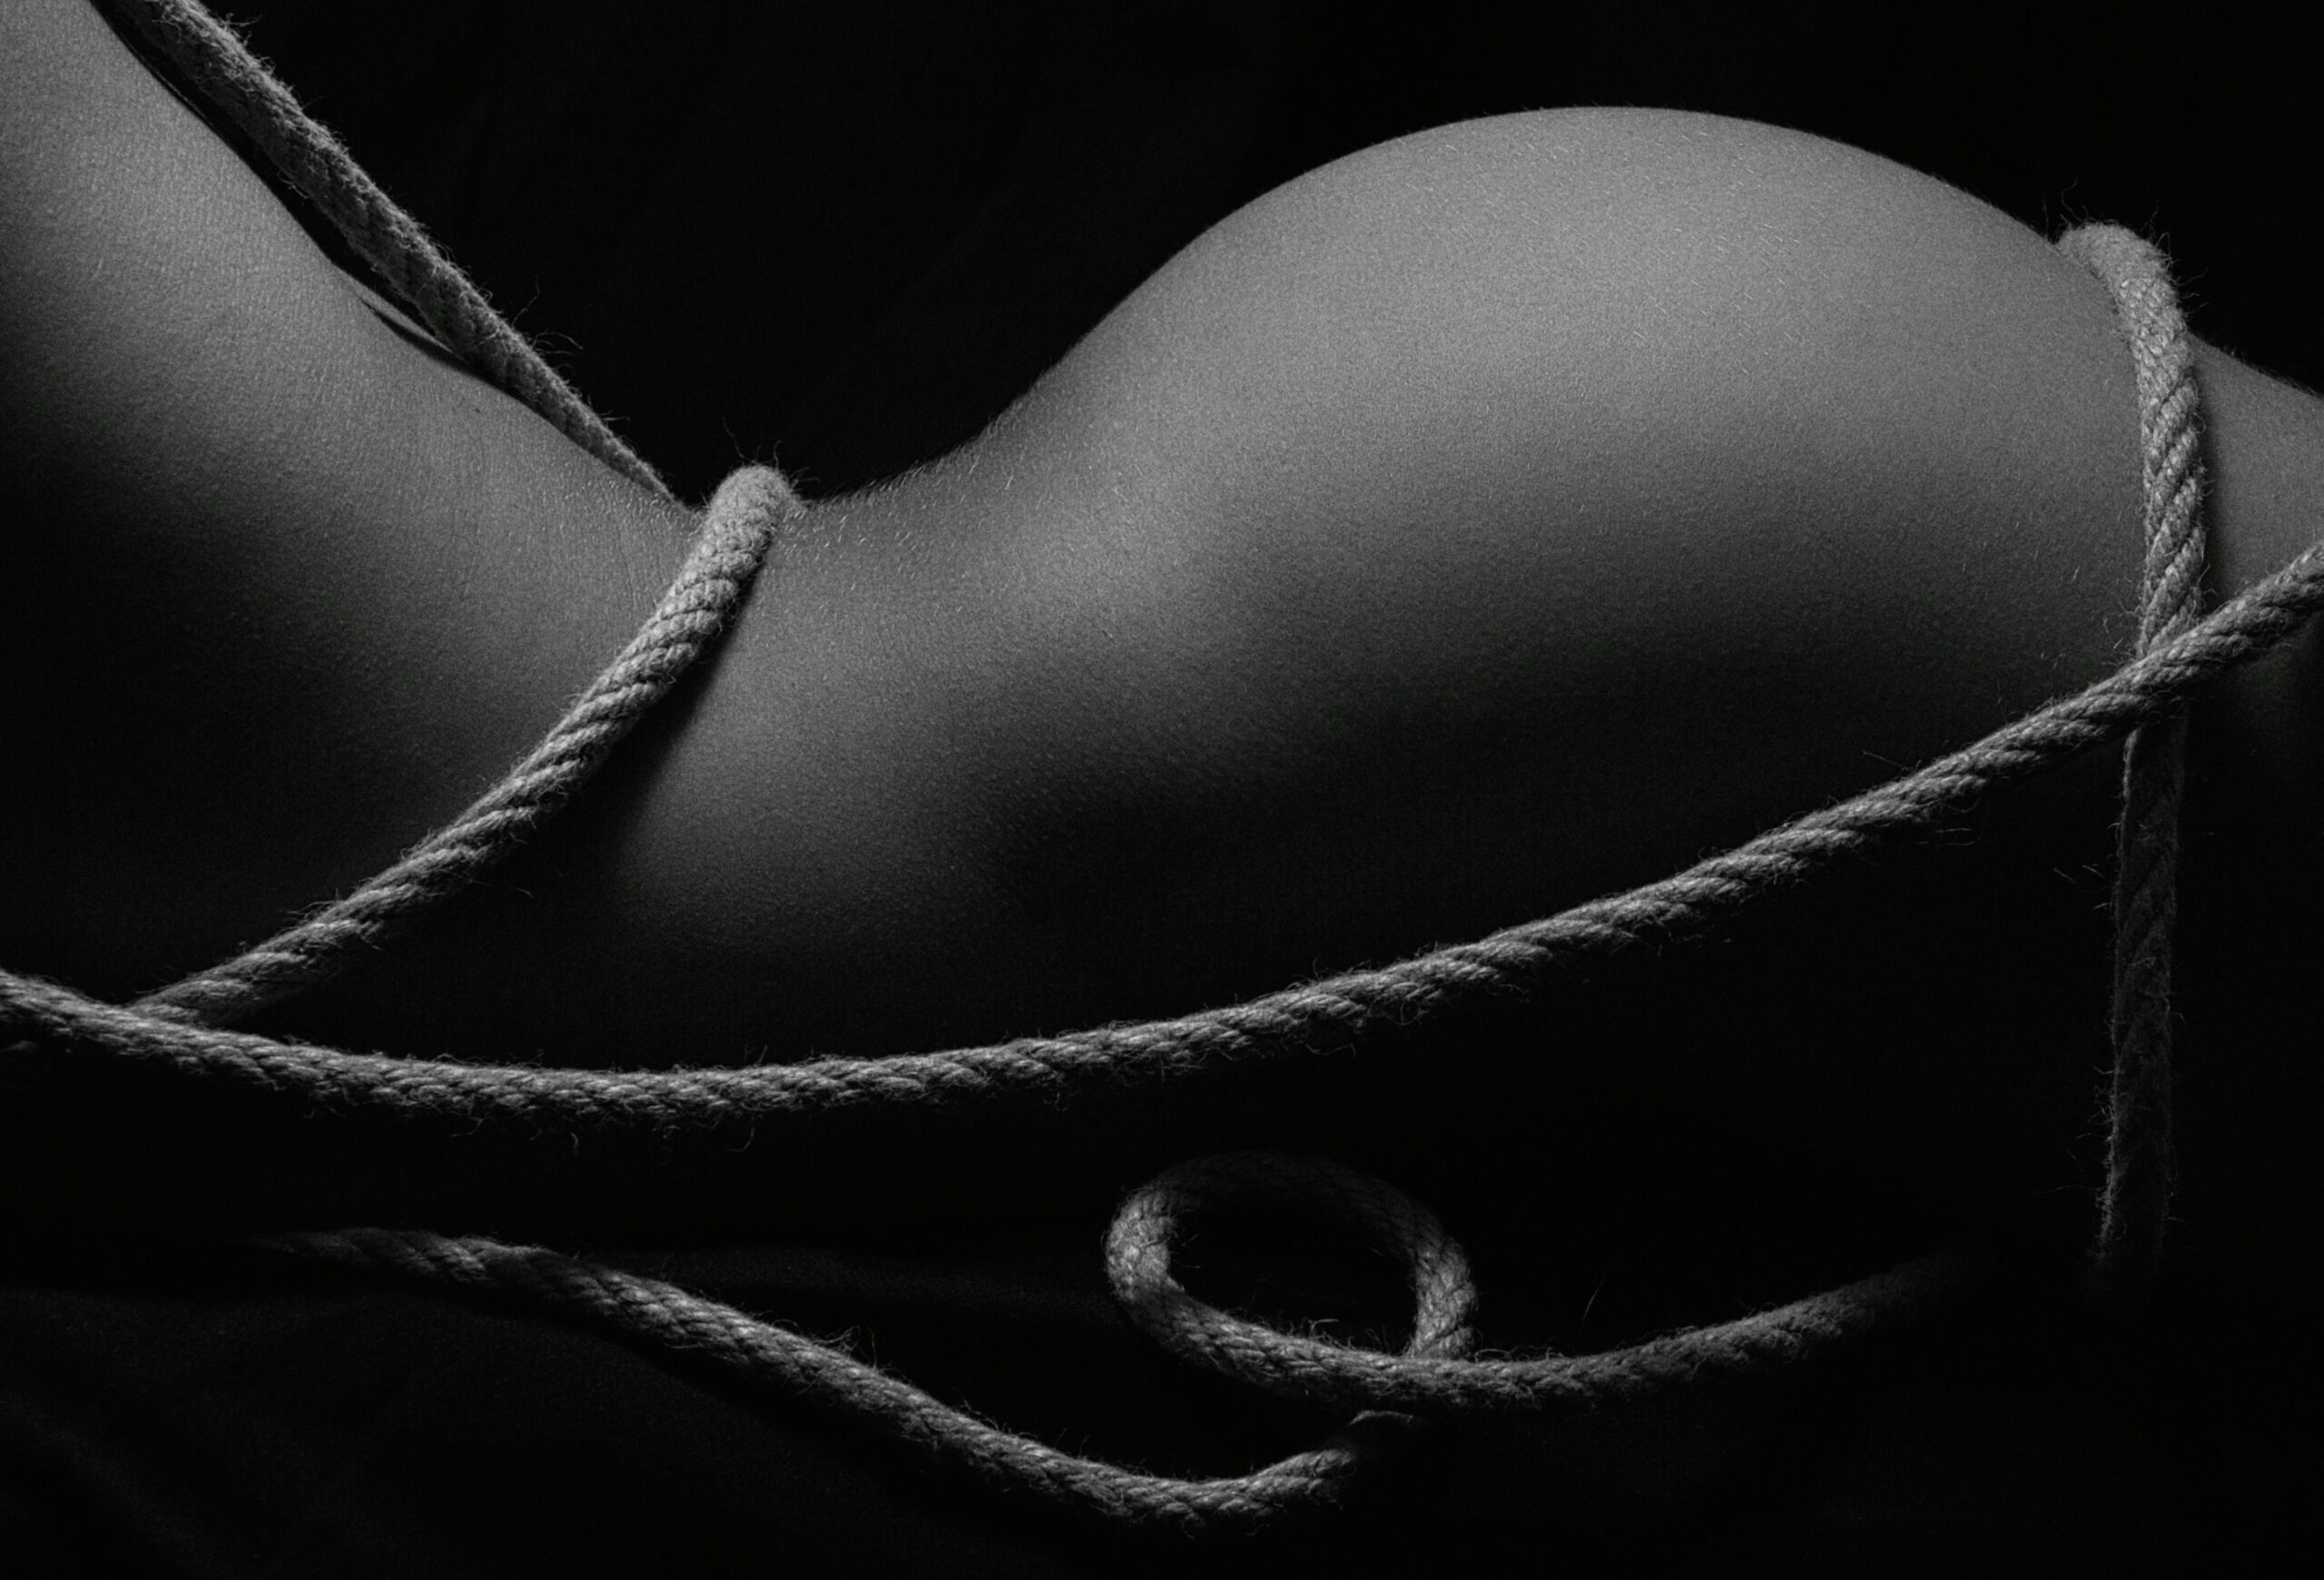 zwart-wit foto van billen en een bloot lichaam. Ingewikkeld met touw